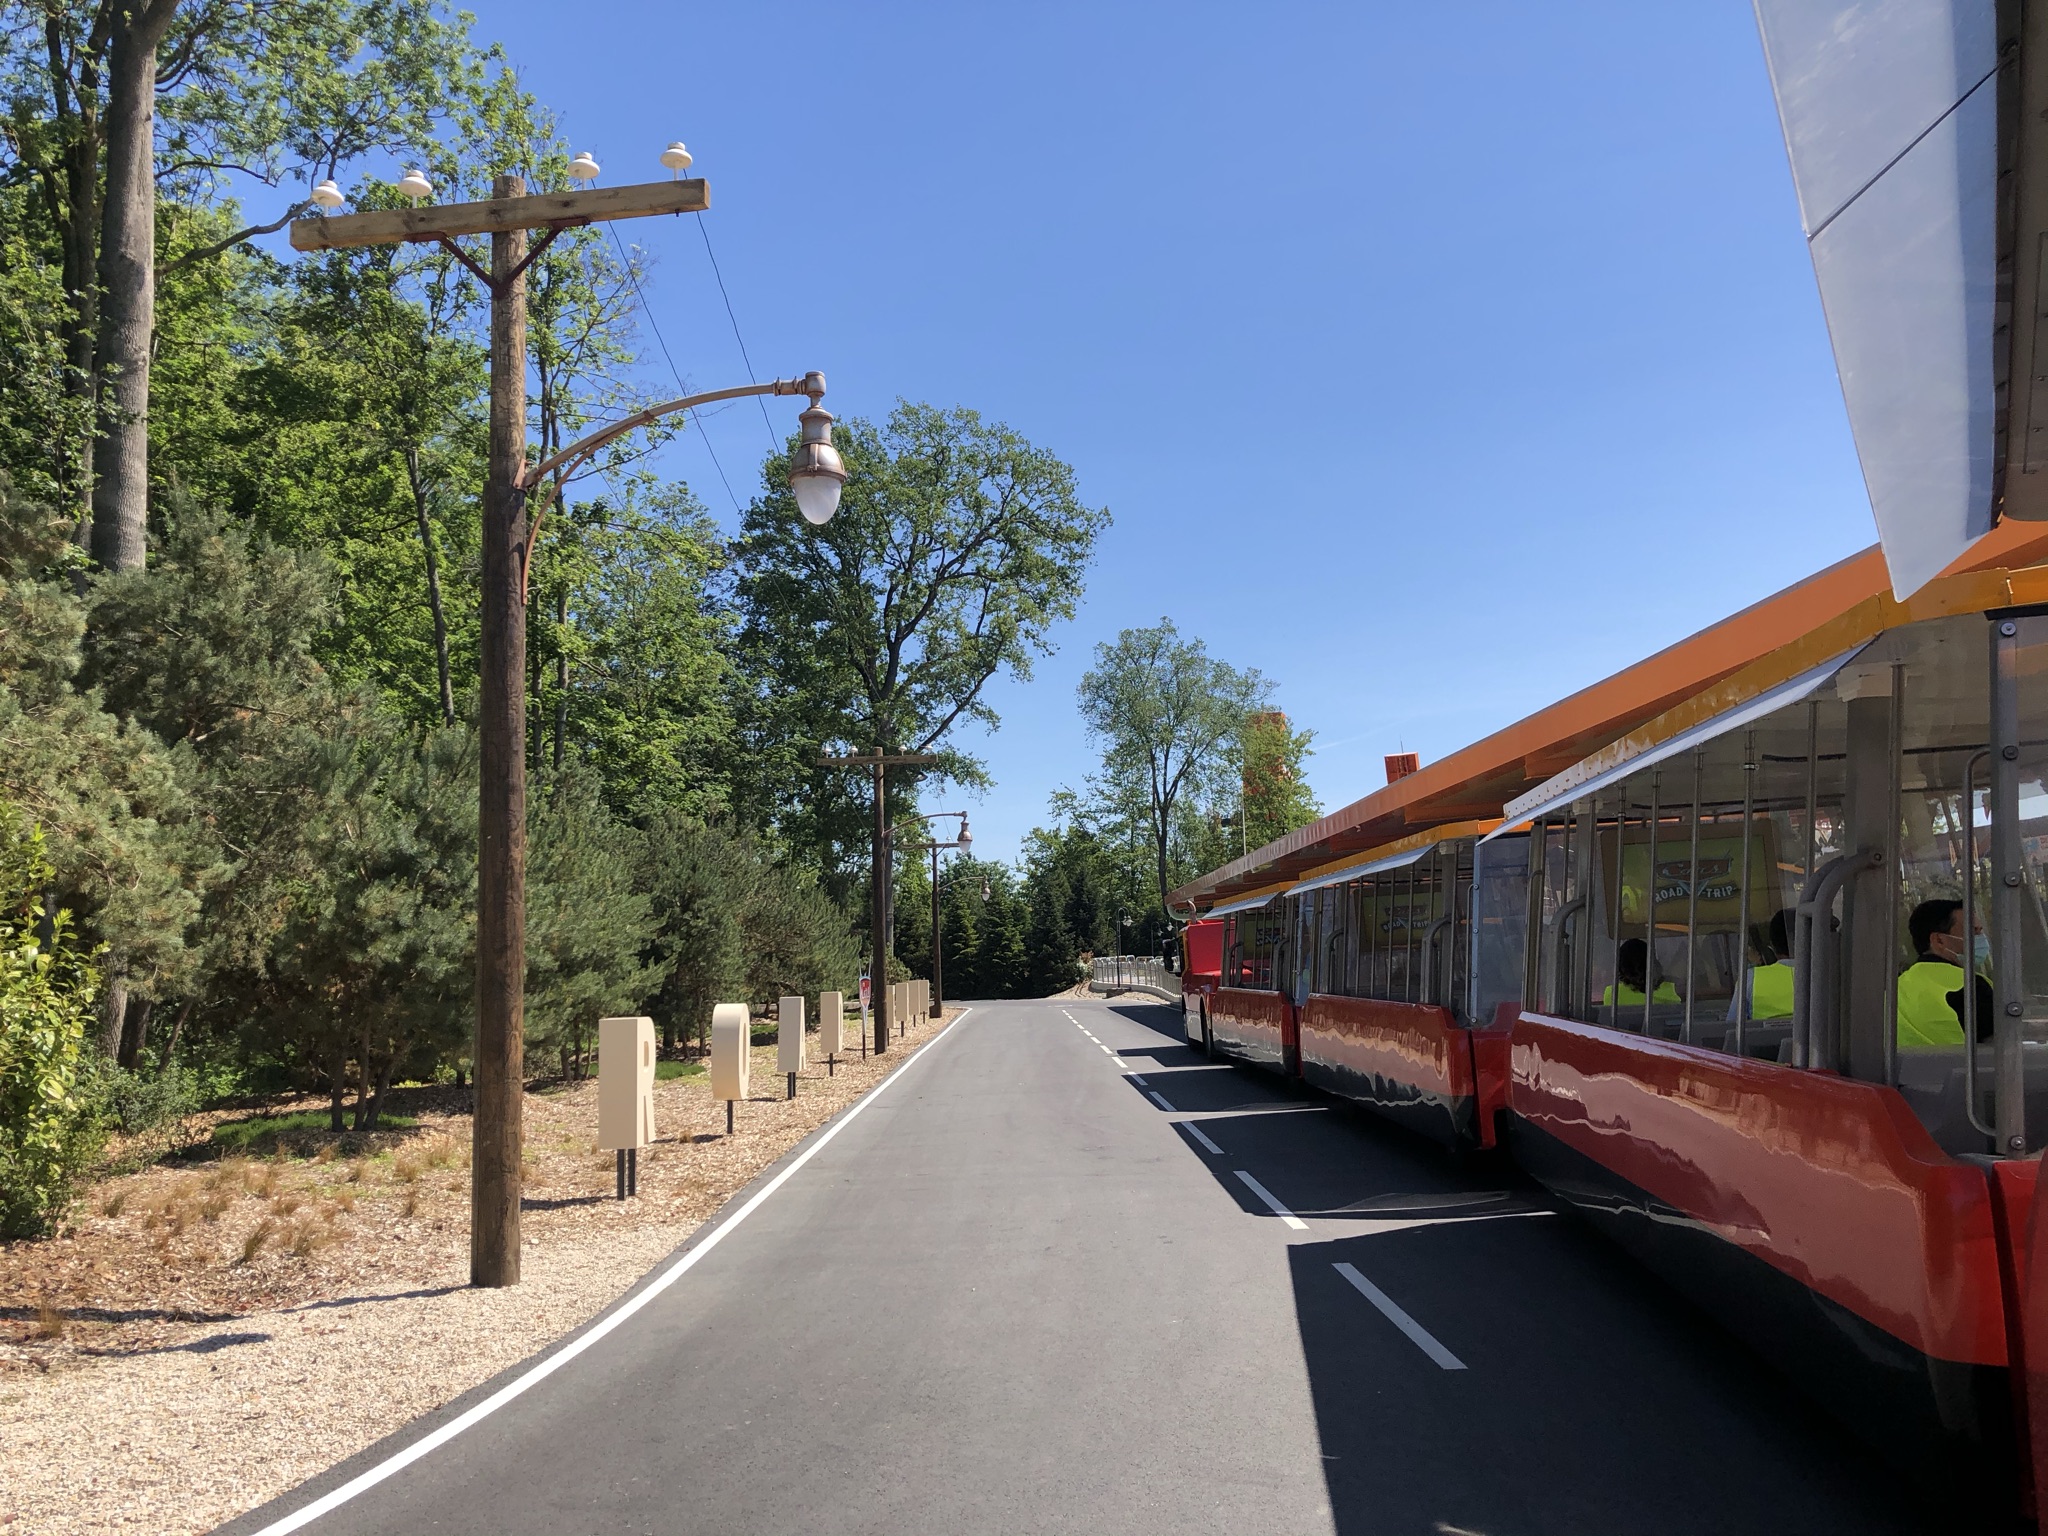 ntage aux éléments de décor, qui rend très bien avec la storyline. Le long des Trams, les visiteurs pourront apercevoir les lettres "Road Trip", qui rappellent les lettres "California" de l'entrée de Disney California Adventure, aux Etats-Unis.